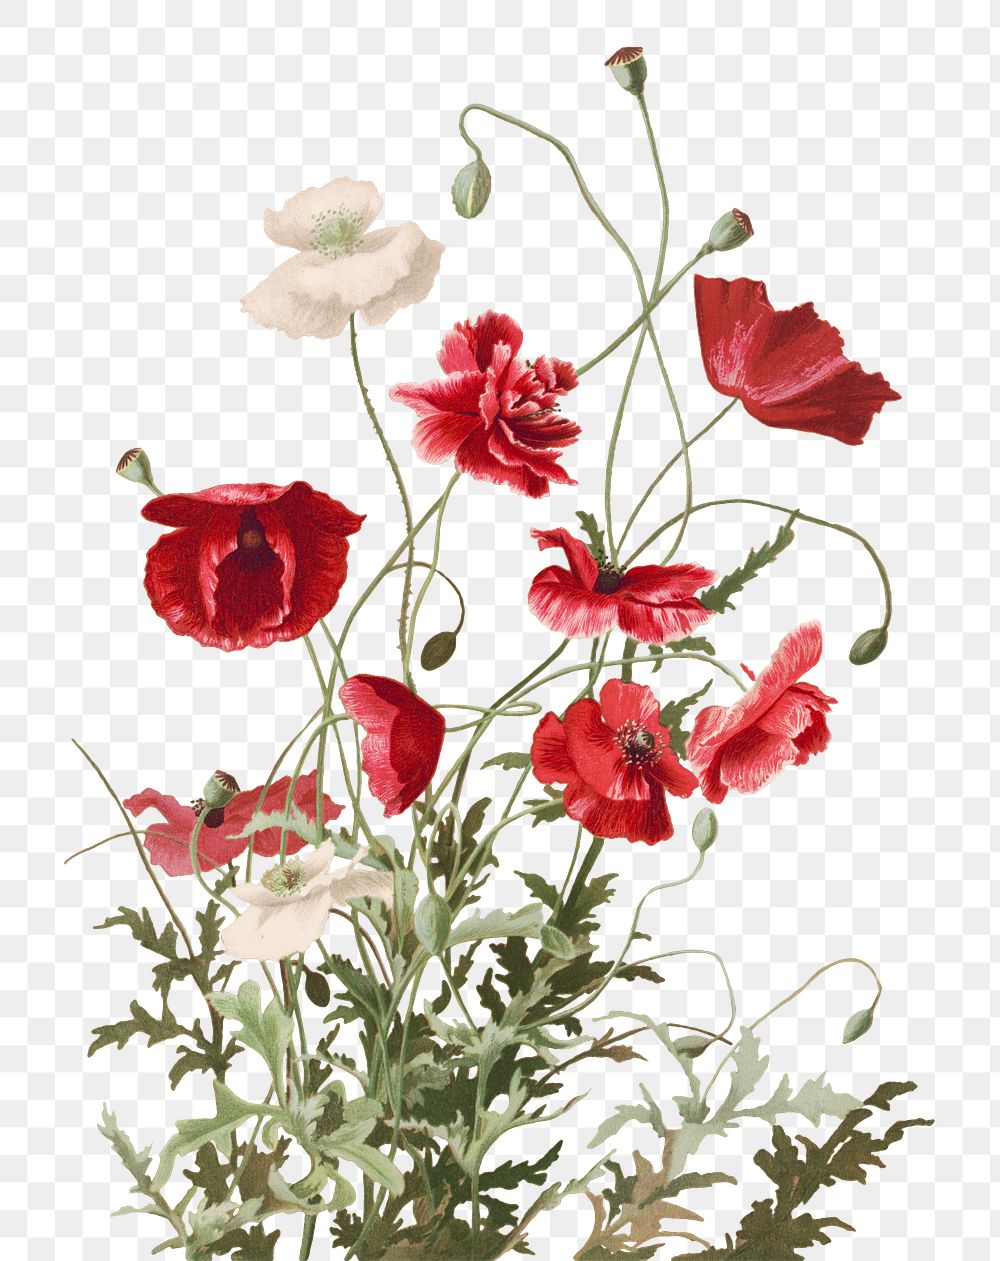 Vintage poppy flower botanical png illustration, remix from artworks by L. Prang & Co.